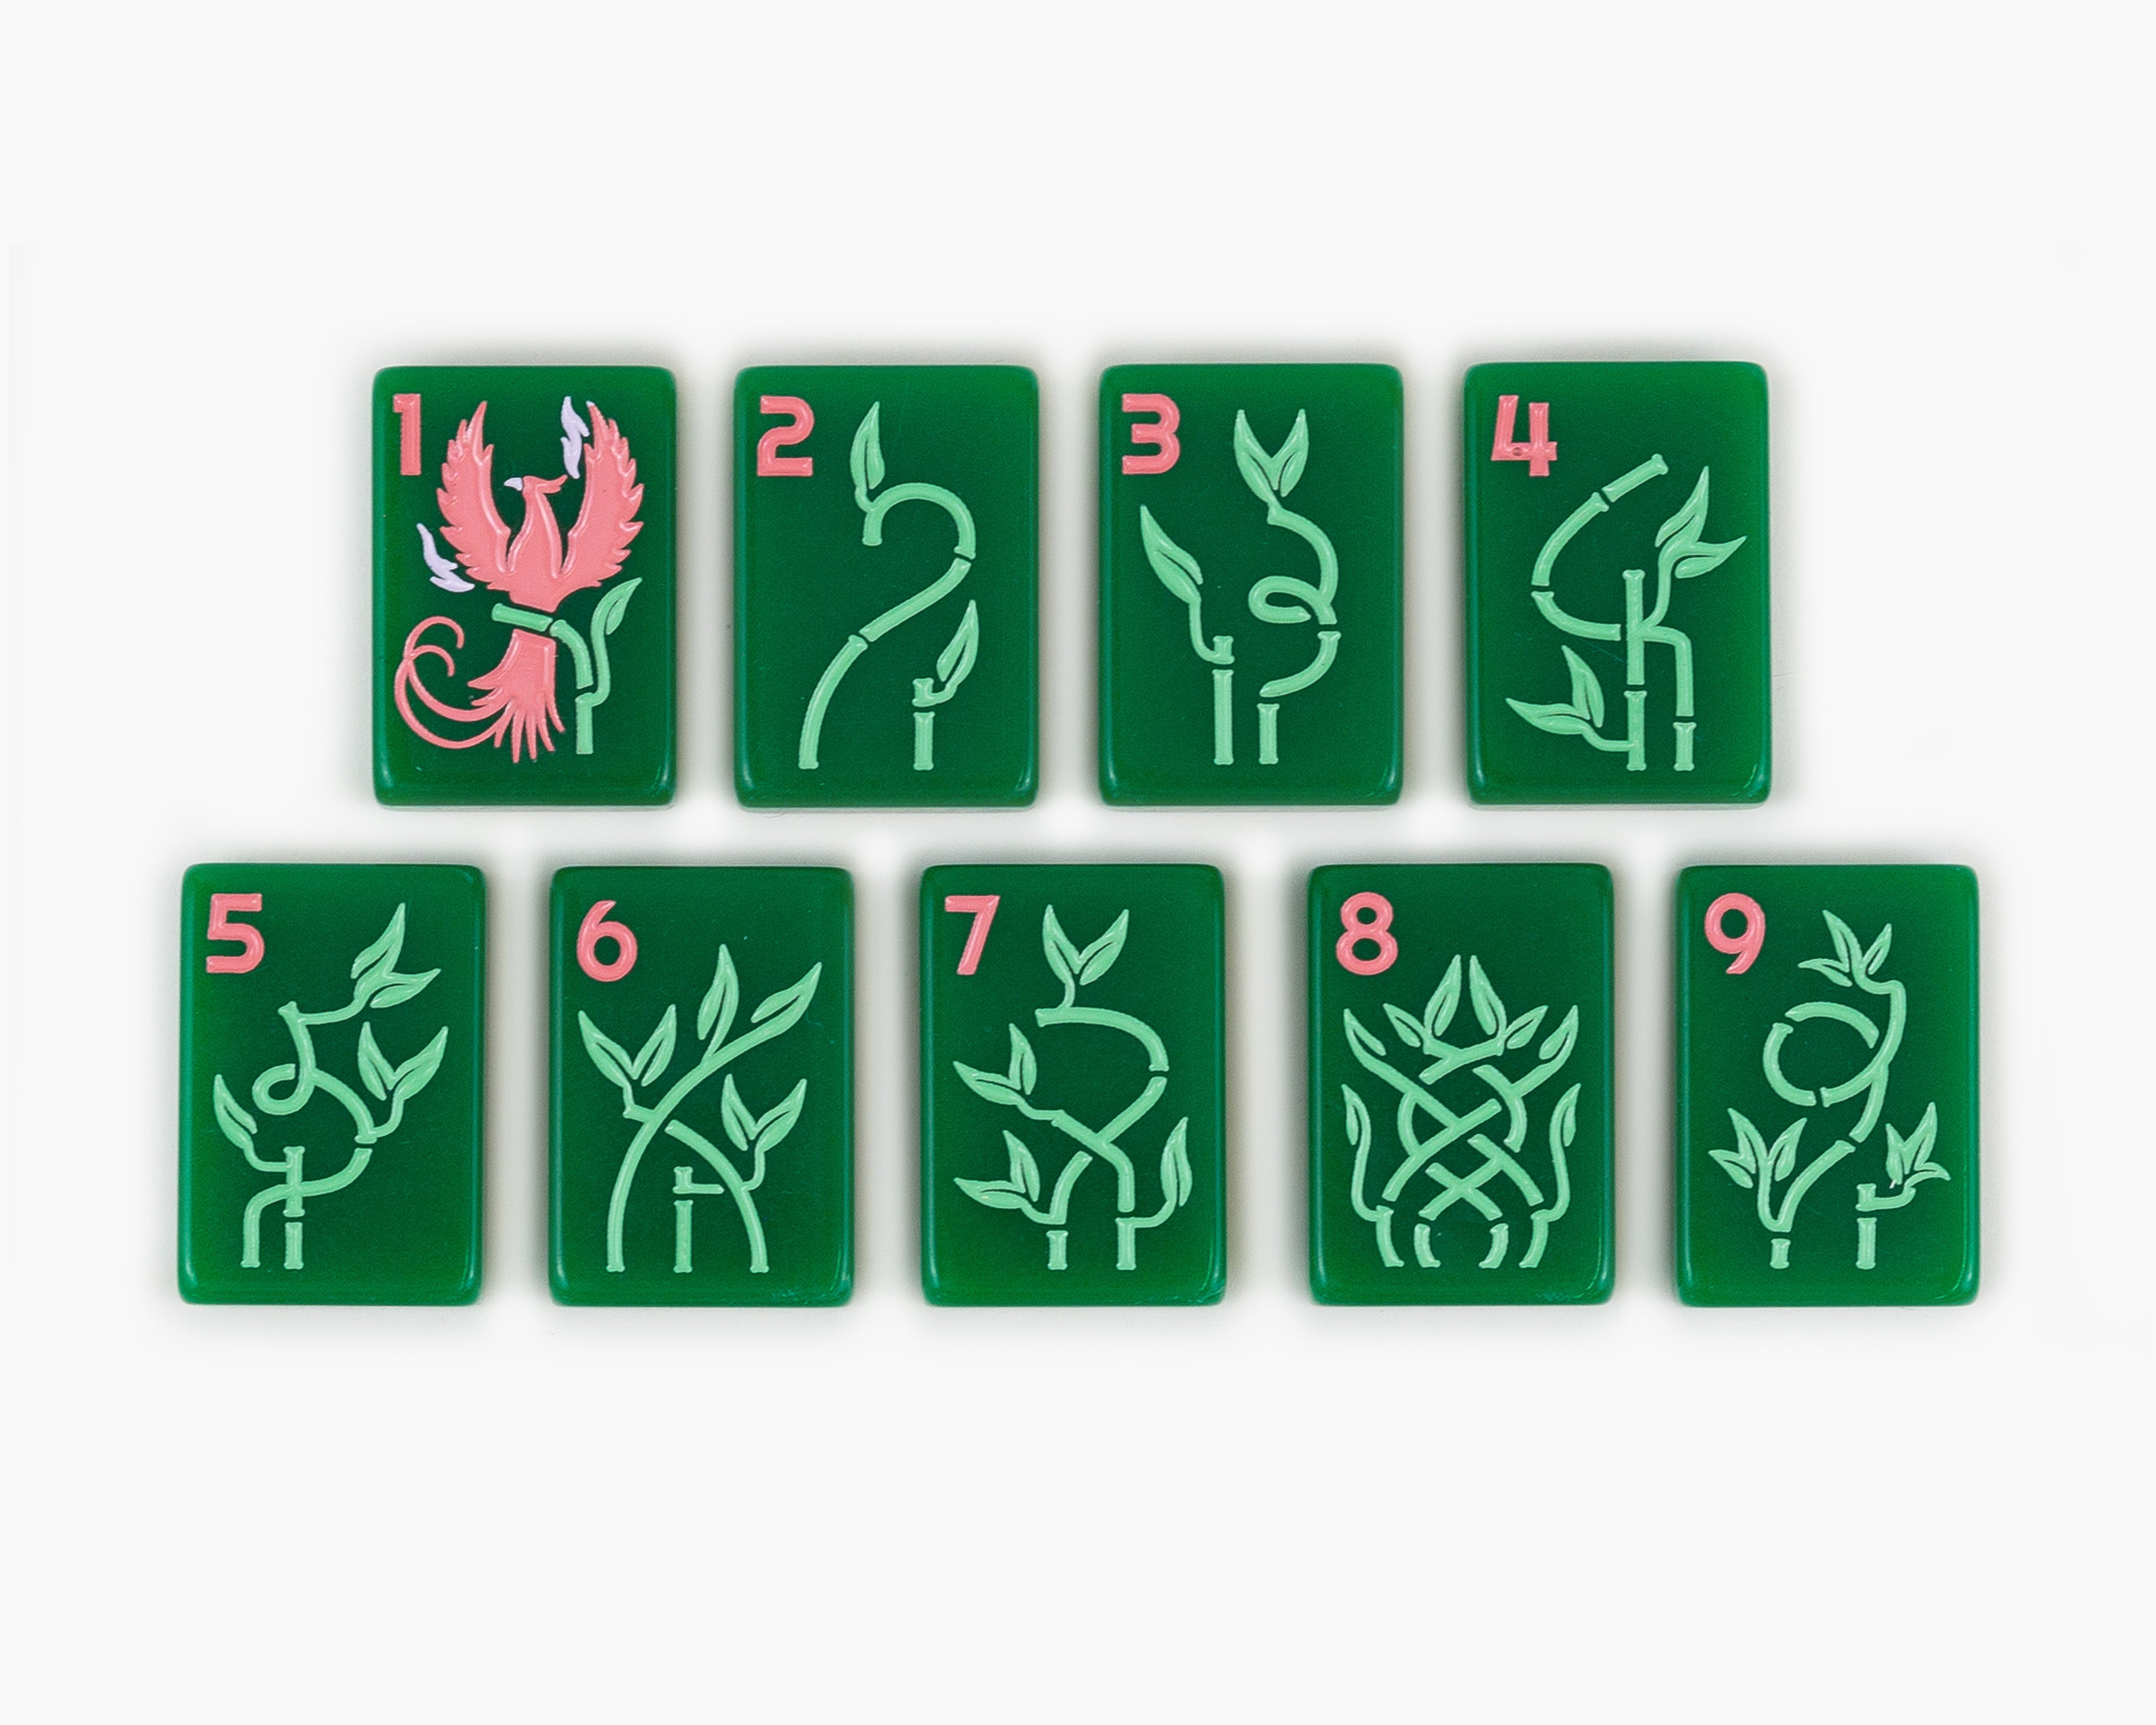 Jade Ivory Mahjong Tiles Set